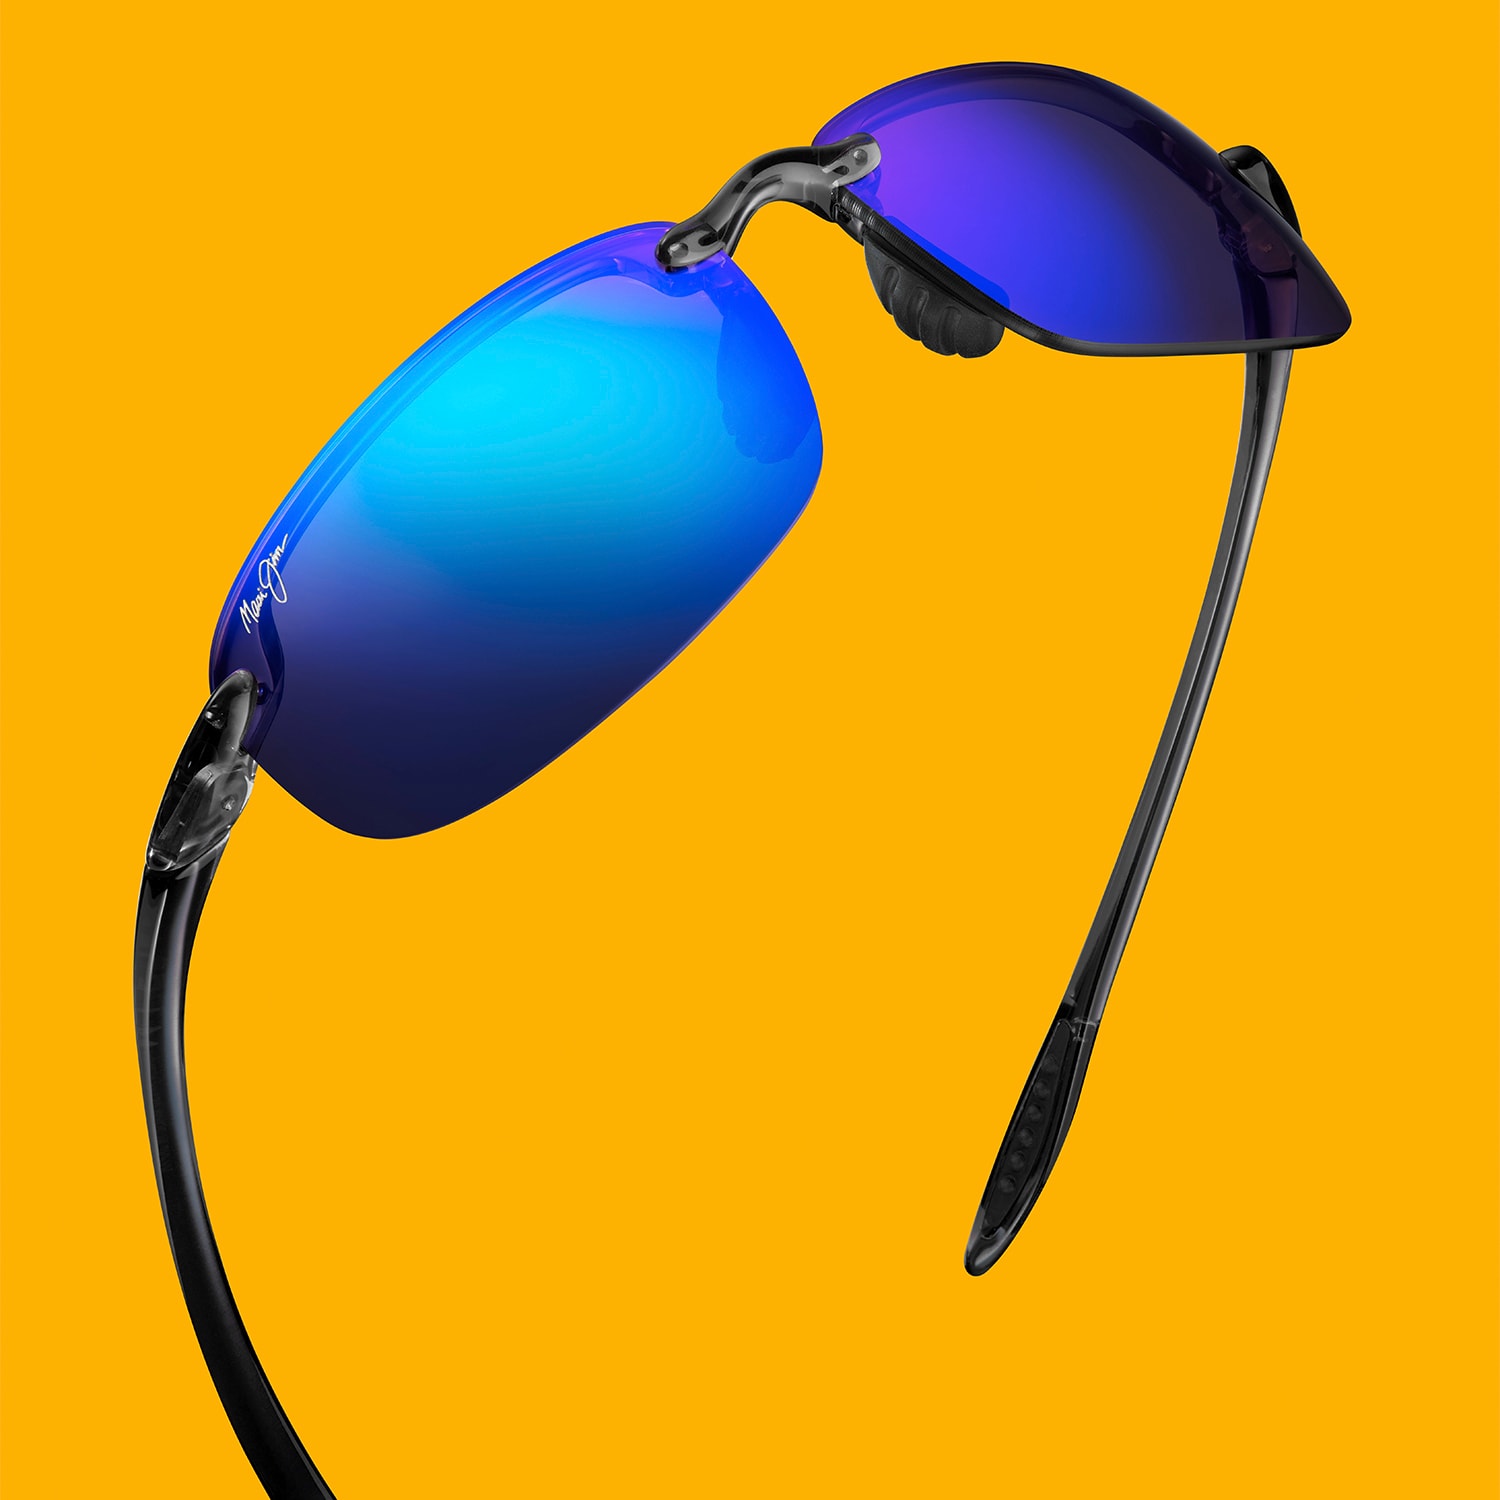 PolarizedPlus2® Sunglasses